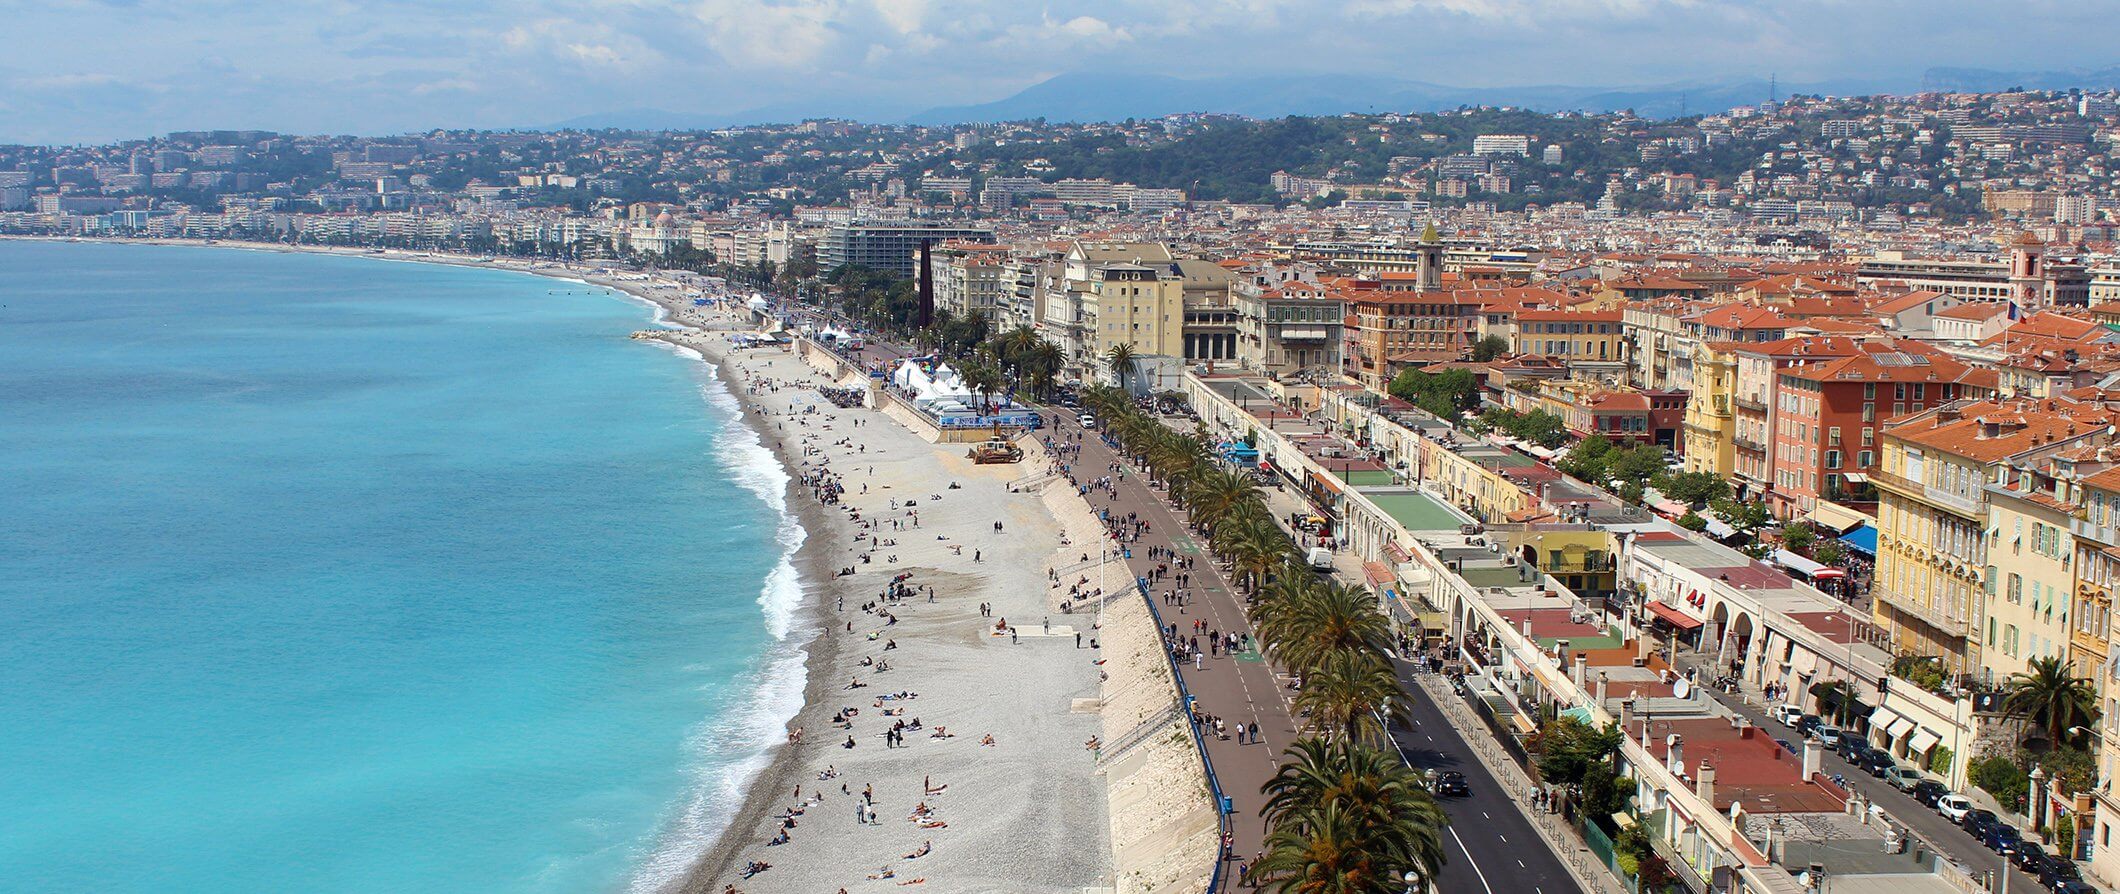 Beach in Nice France. People sunbathing